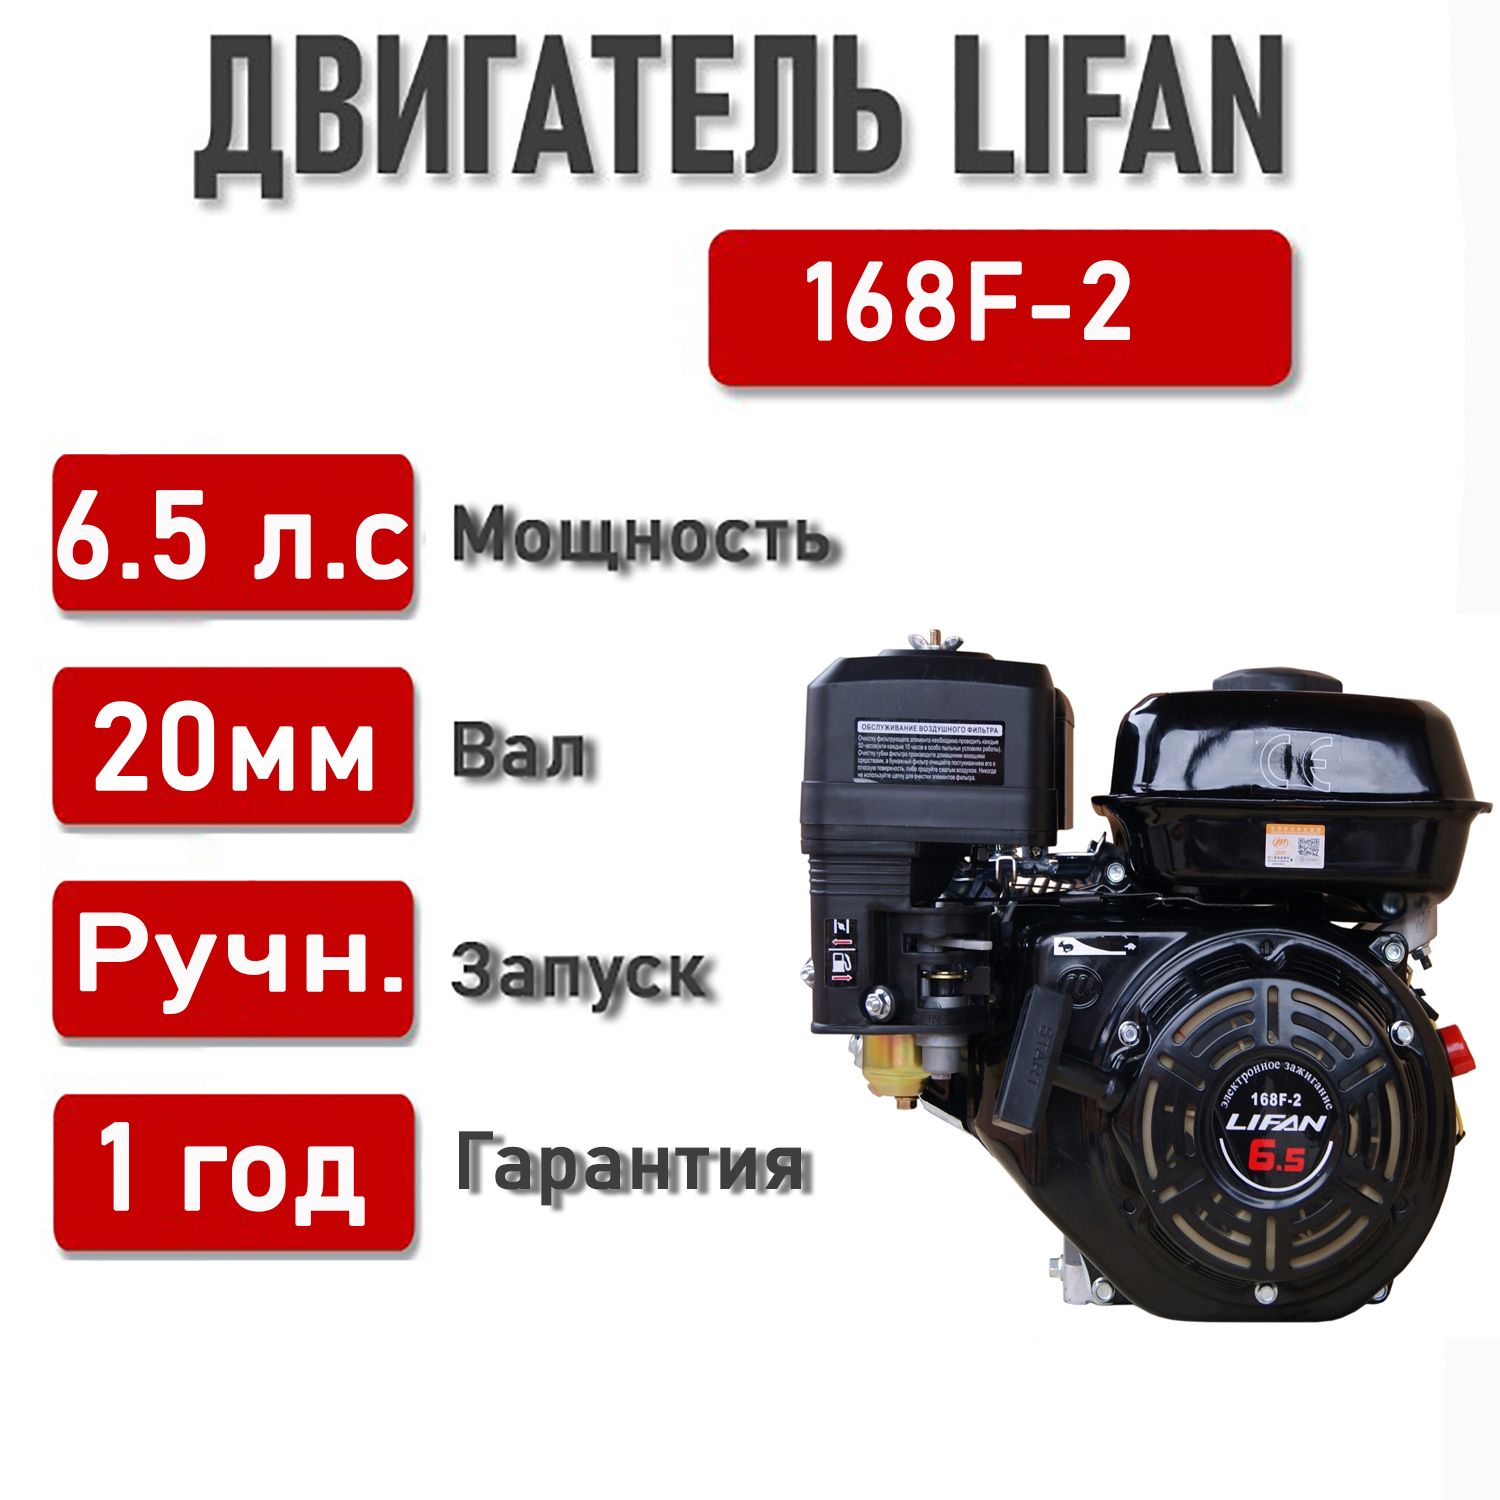 Двигатель Lifan 168FB-2 6.5 л.с. (конусный вал)